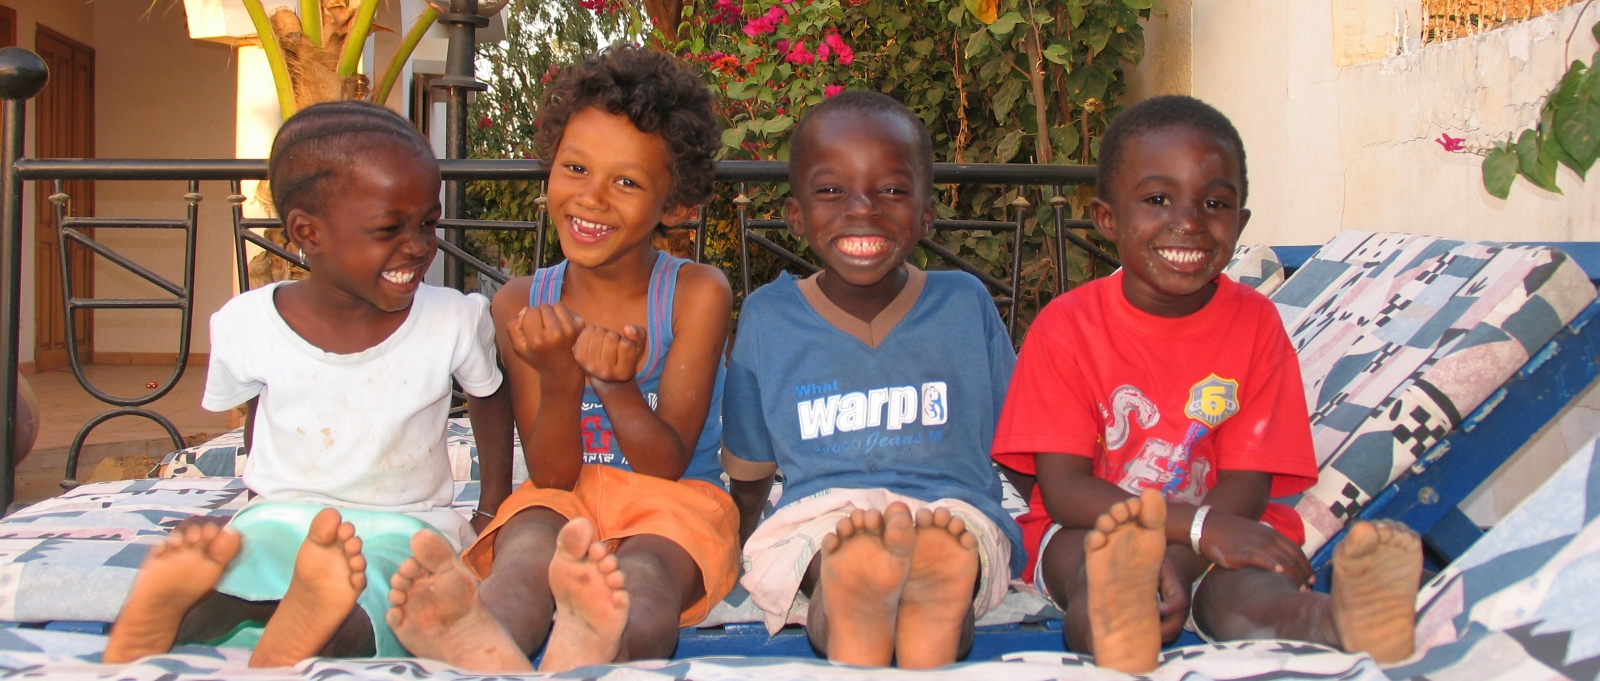 vier jonge Senegalese kindjes die op een ligstoel zitten, lachend voor de foto